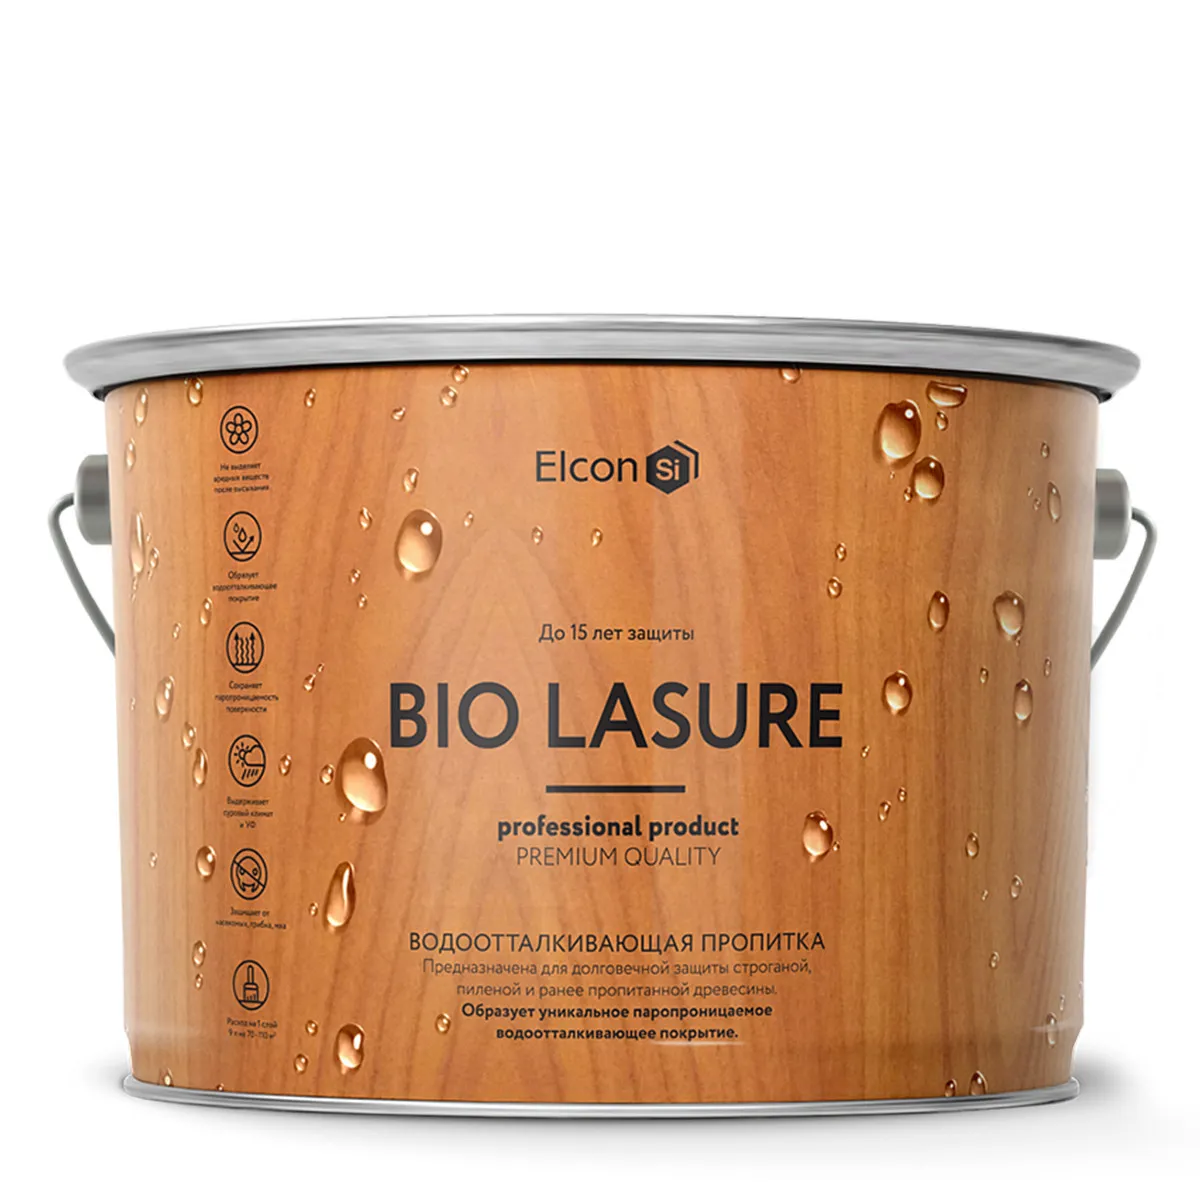 Пропитка для защиты древесины Elcon Bio Lasure (c водоотталкивающим эффектом), орегон, 9 л#1